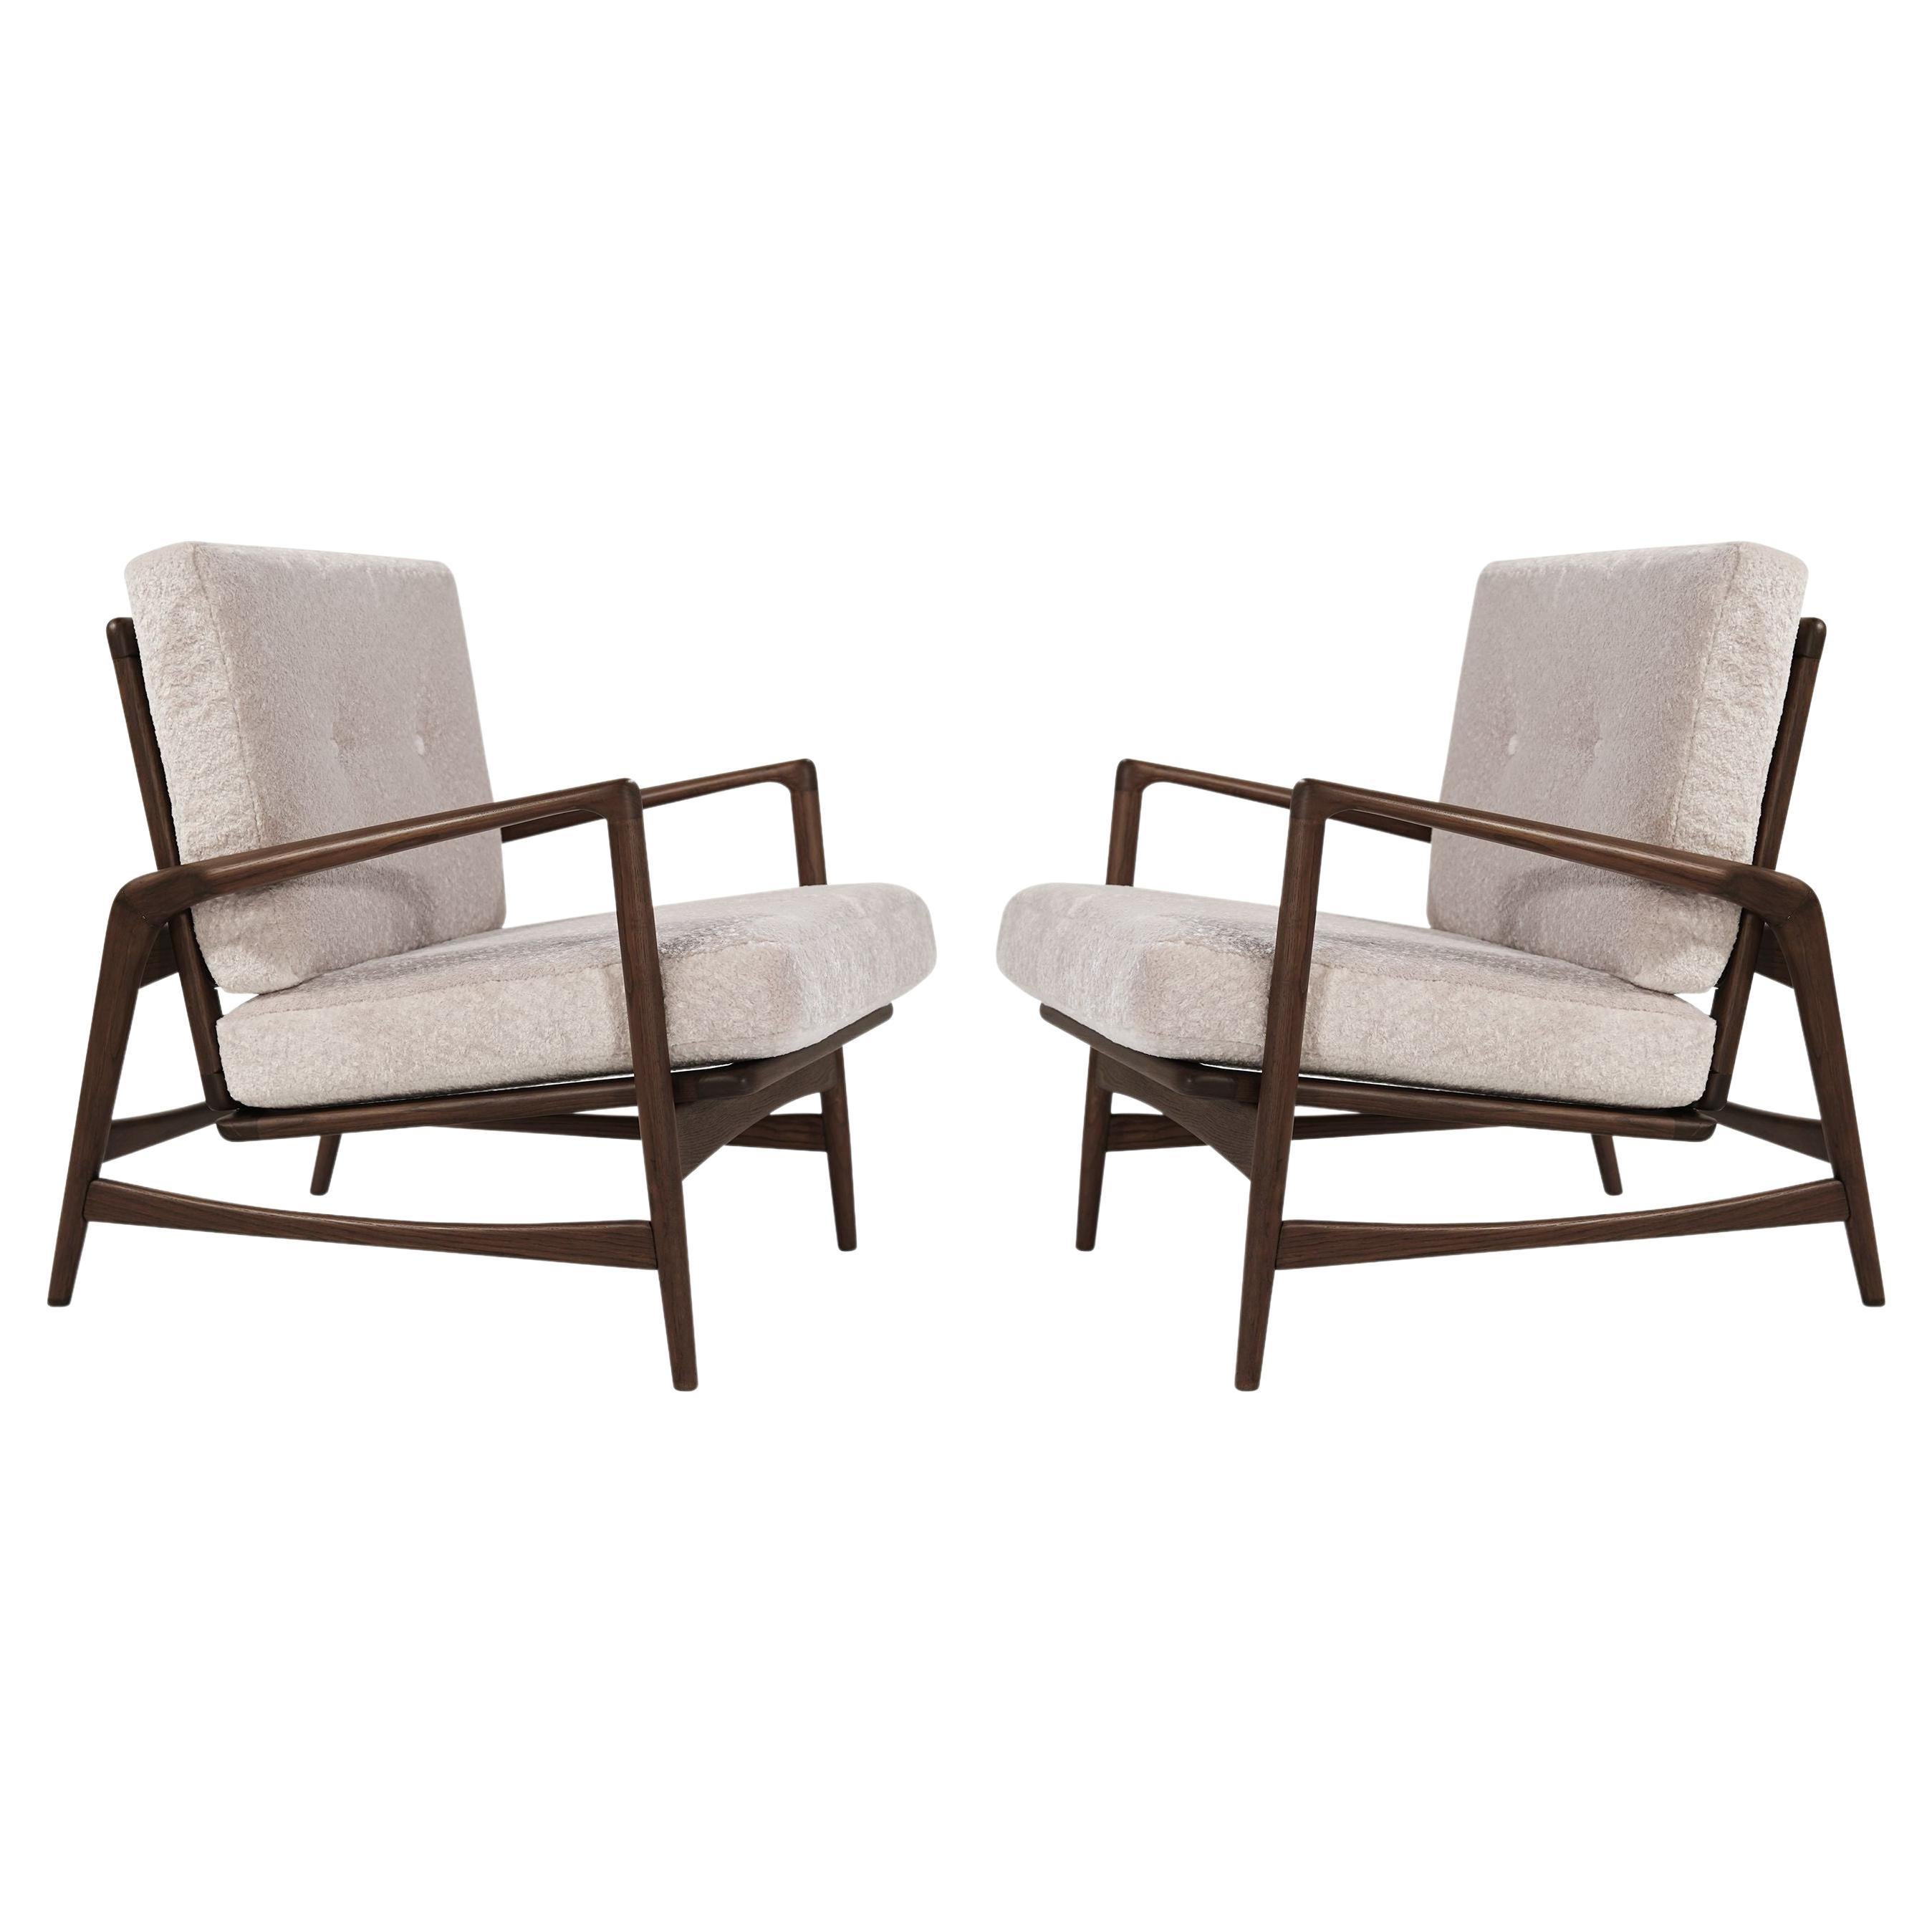 Set of Scandinavian Modern Reclining Lounge Chairs